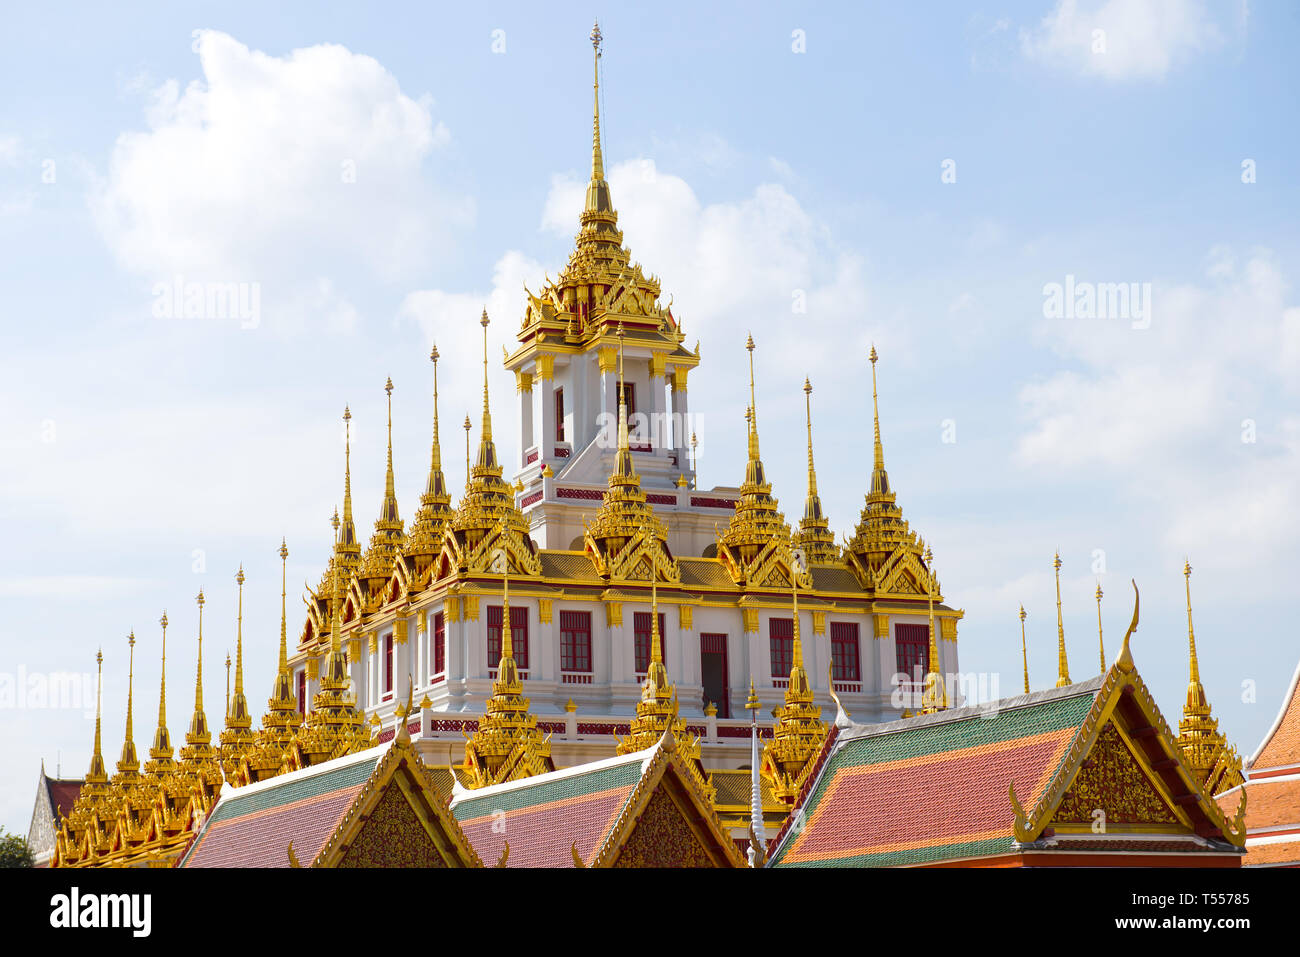 Die Oberseite des Chedi Loha Prasat an einem sonnigen Tag. Buddhistische Tempel Wat Ratchanatdaram Woravihara, Bangkok Stockfoto